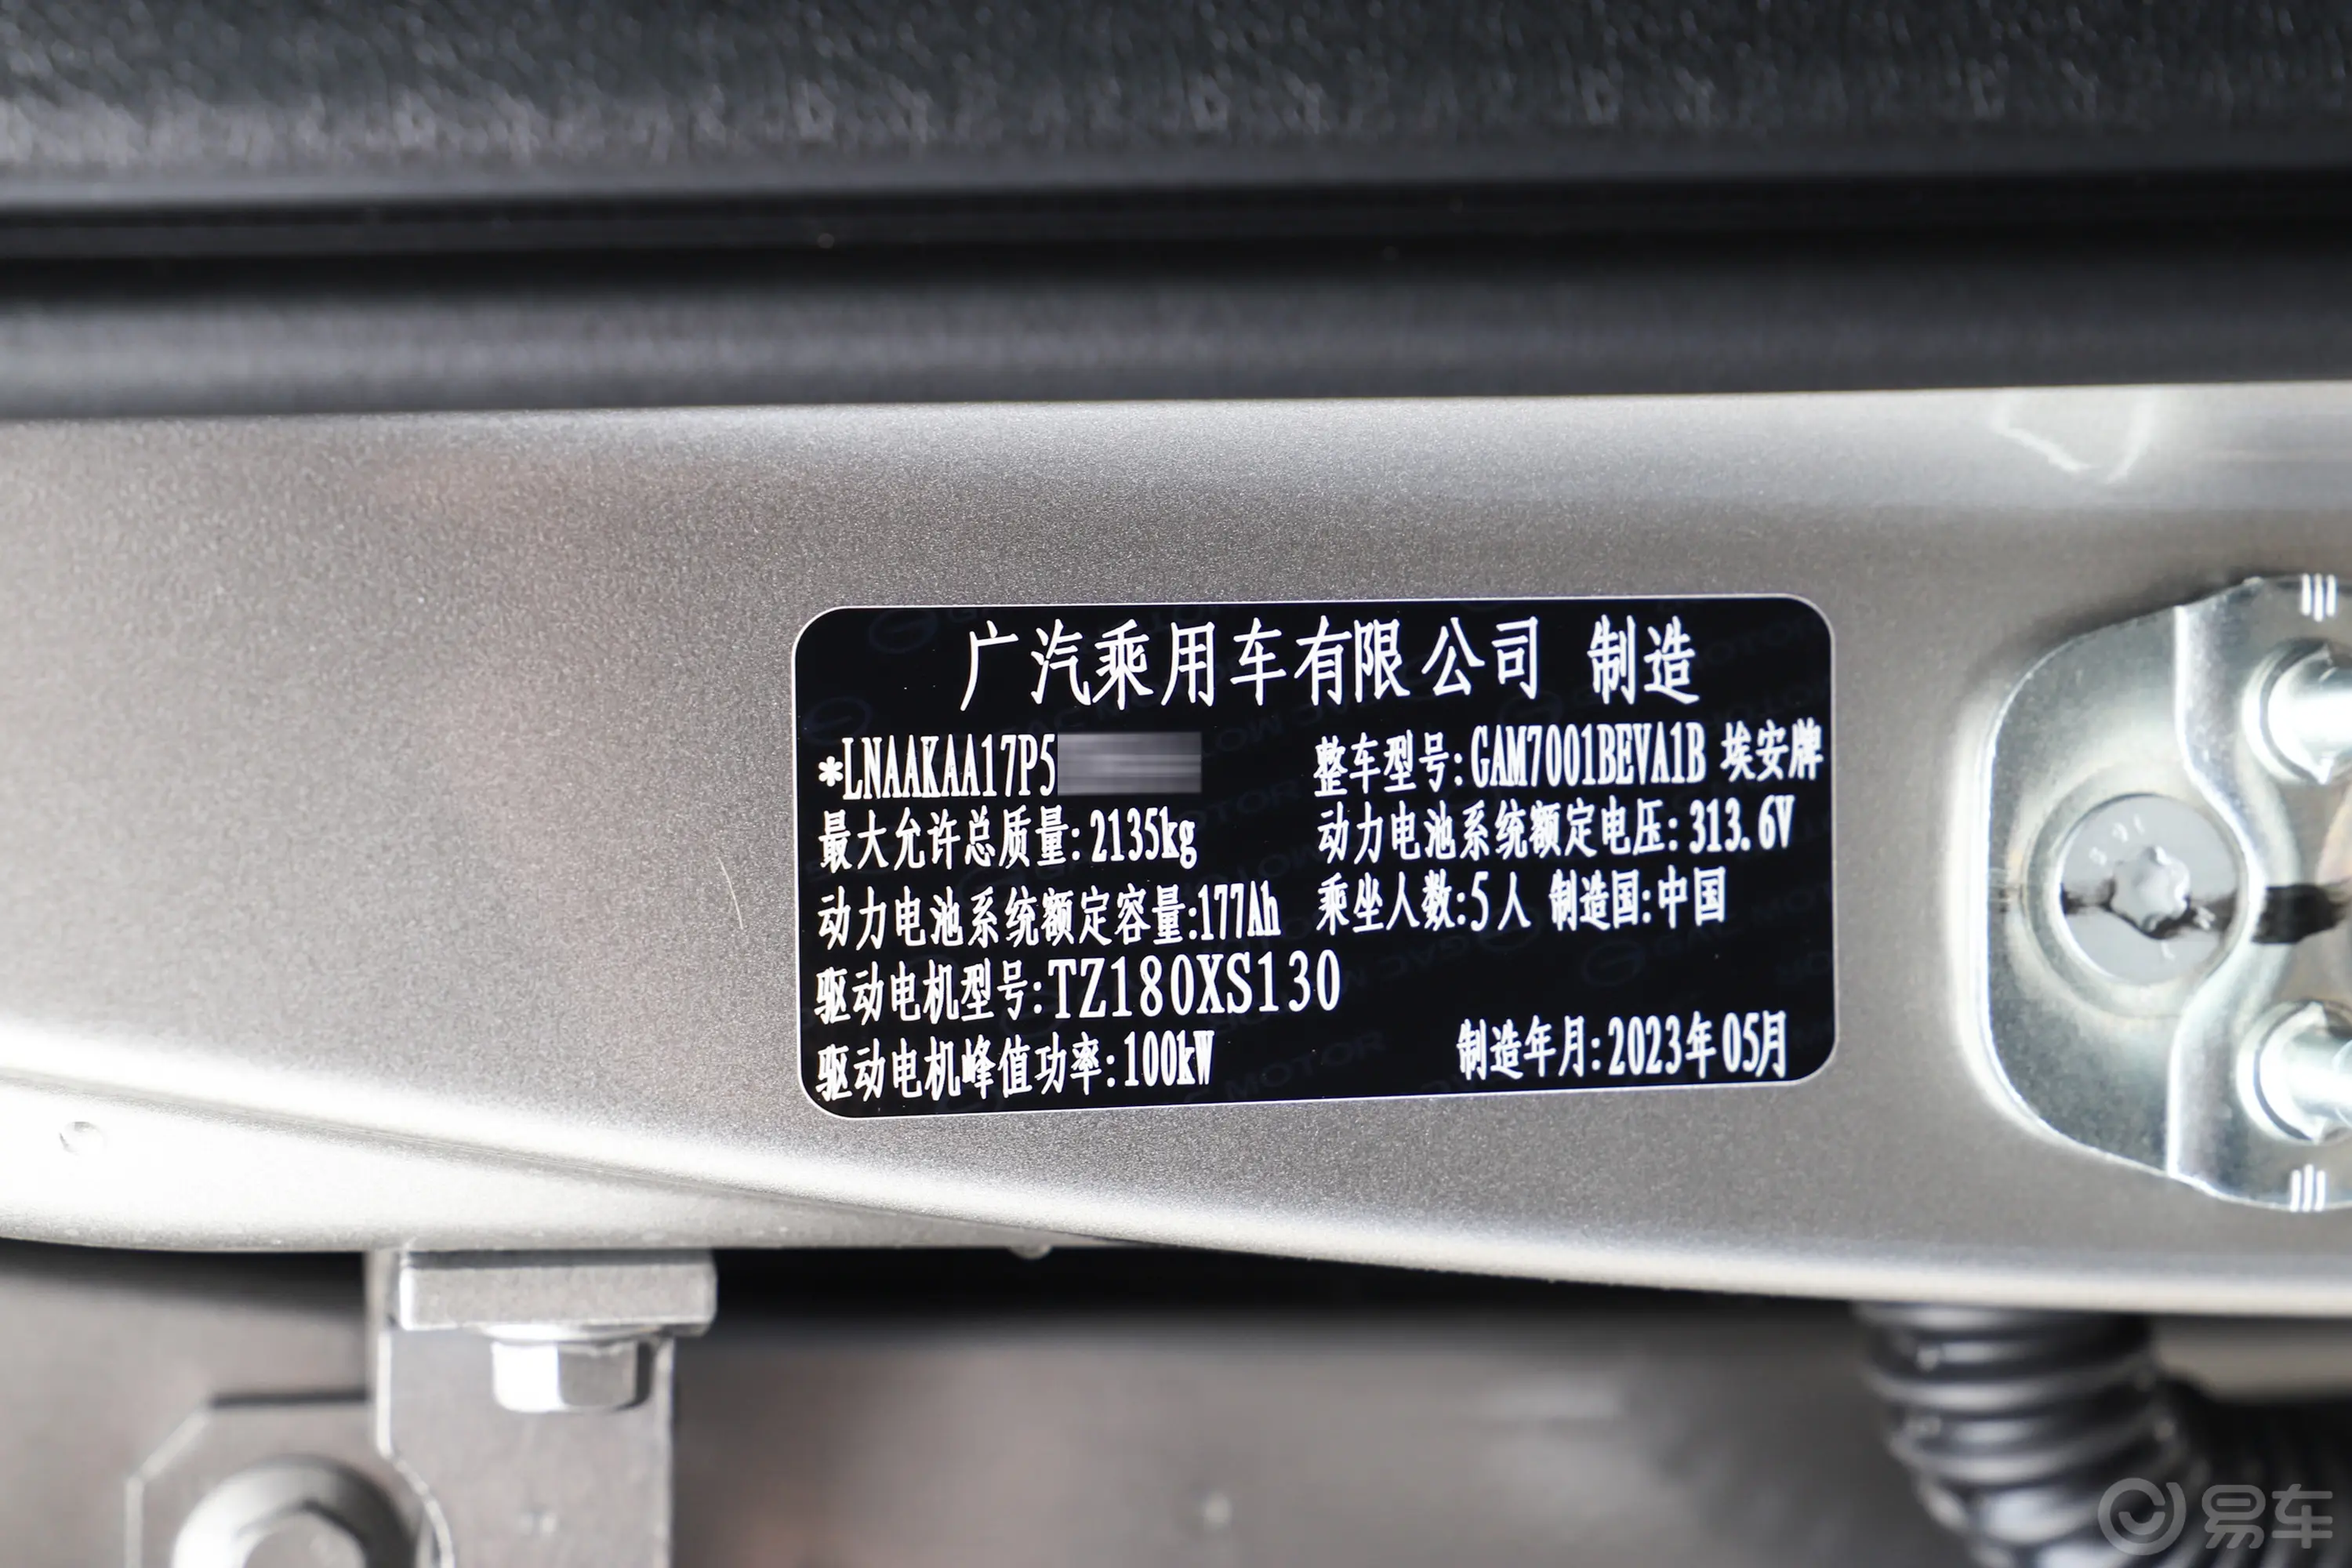 AION S480km 魅580 55.5kWh车辆信息铭牌